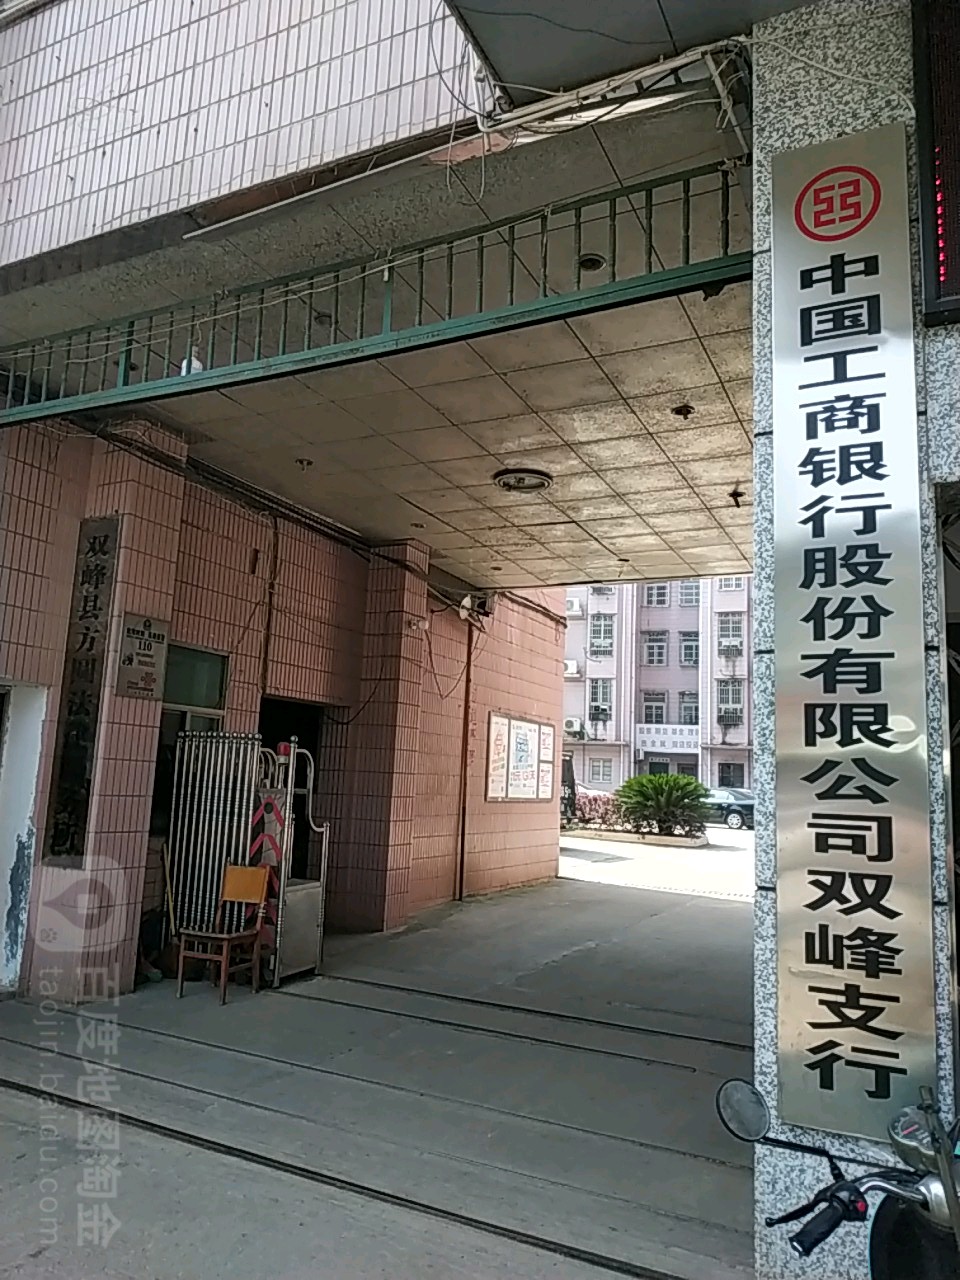 中國工商銀行(雙峰支行營業部)